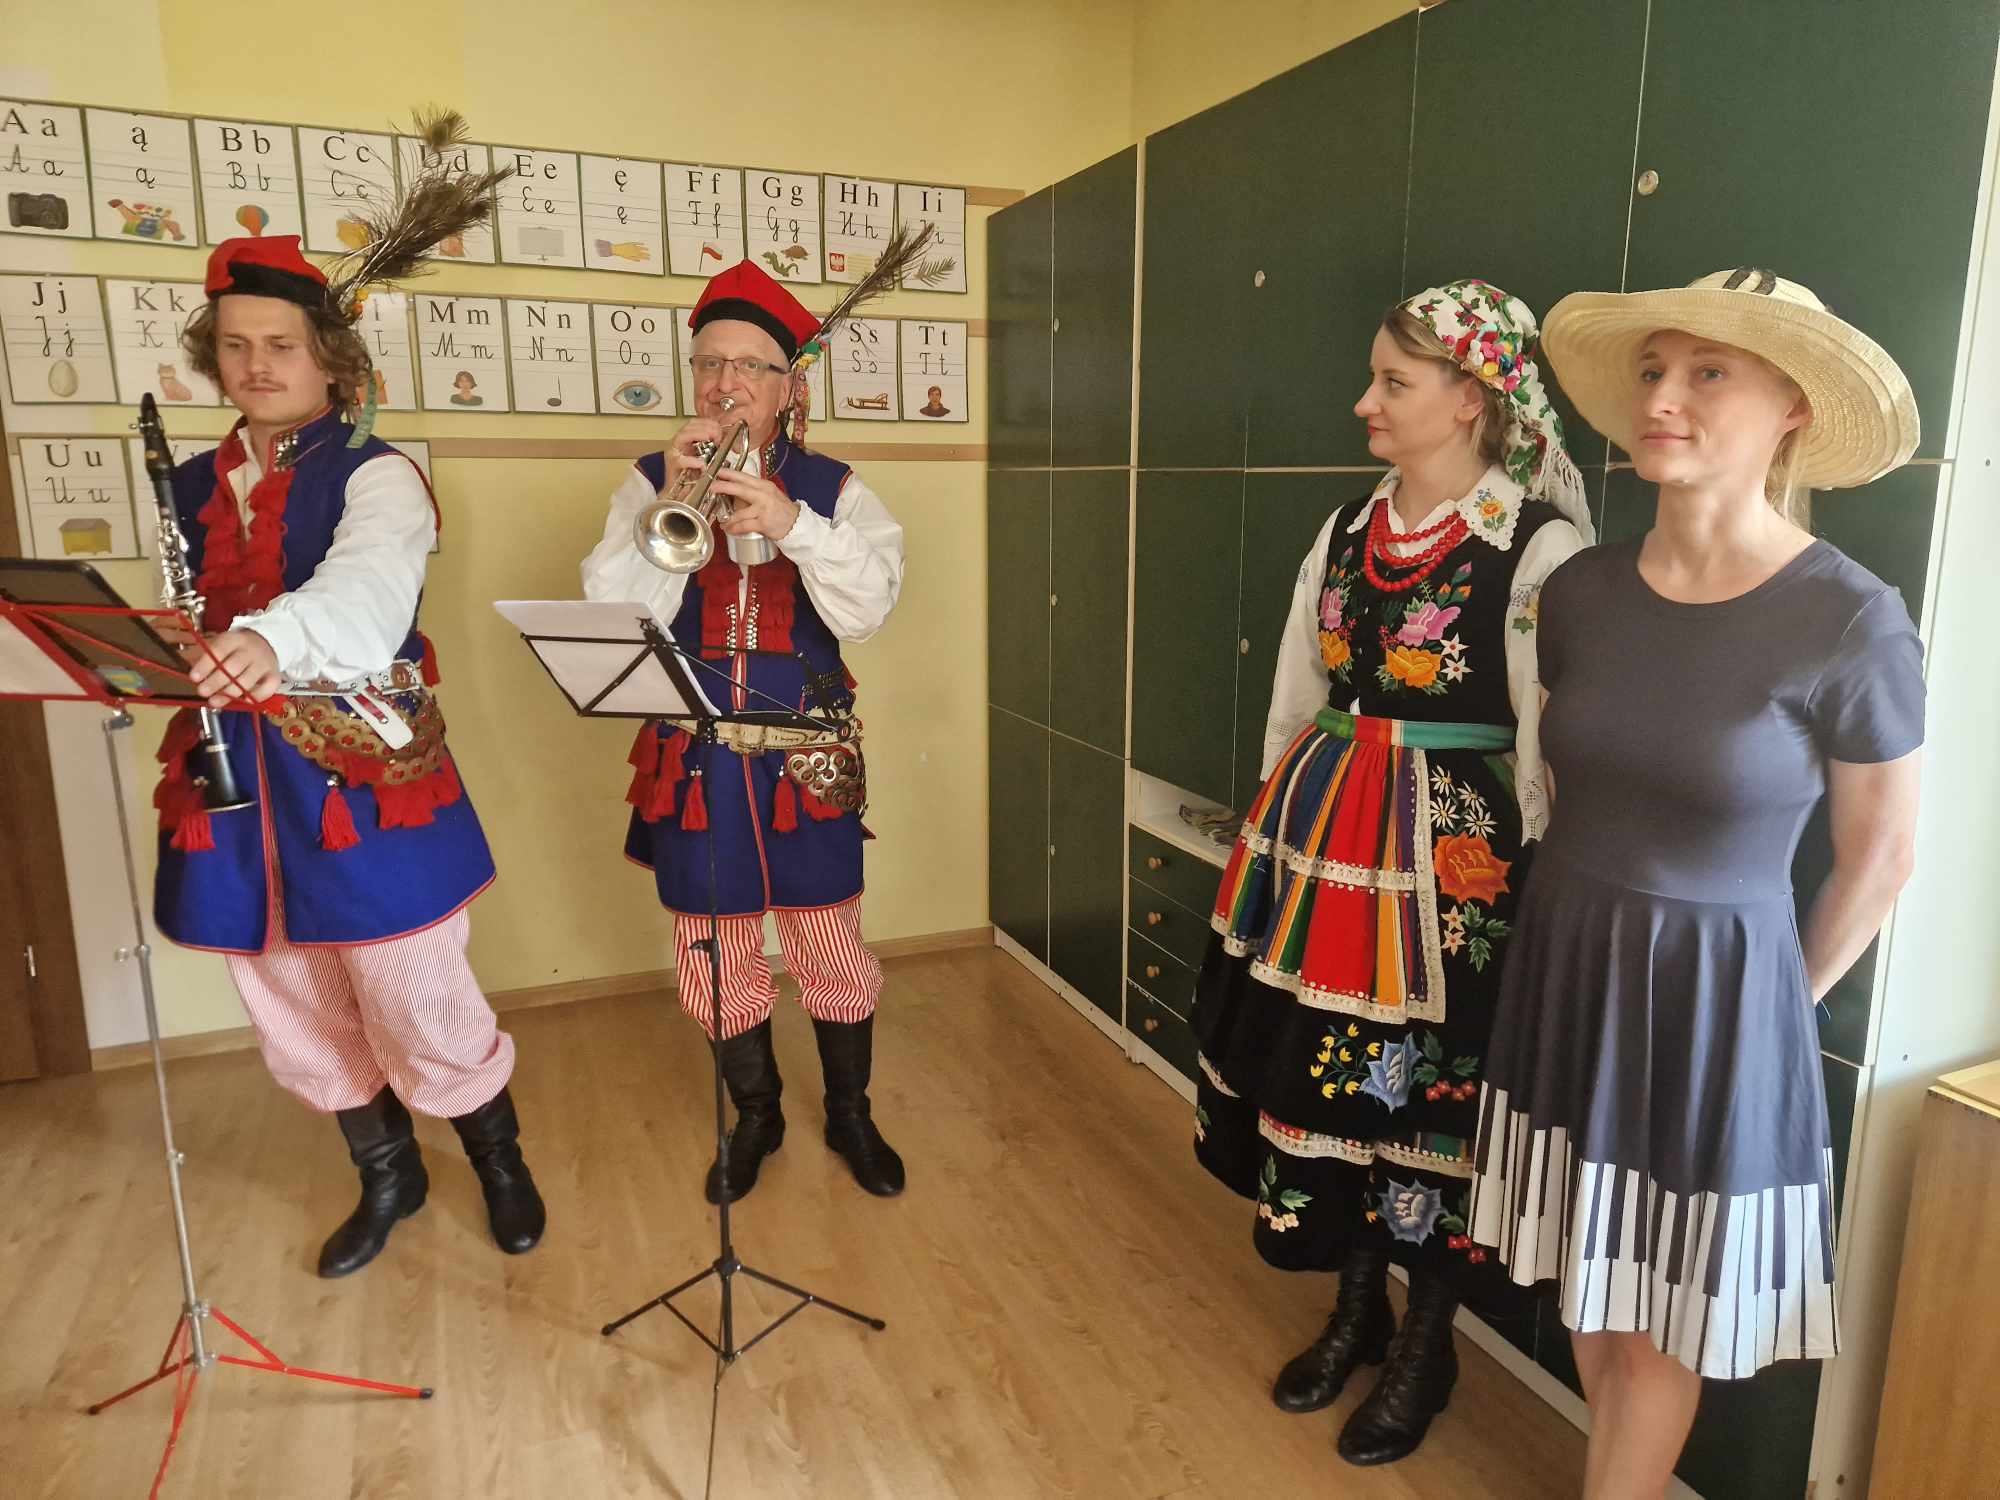 po prawej kobieta w sukience i kapeluszu, obok niej kobieta ubrana w strój regionalny krakowski, obok dwóch mężczyzn , jeden gra na trąbkach